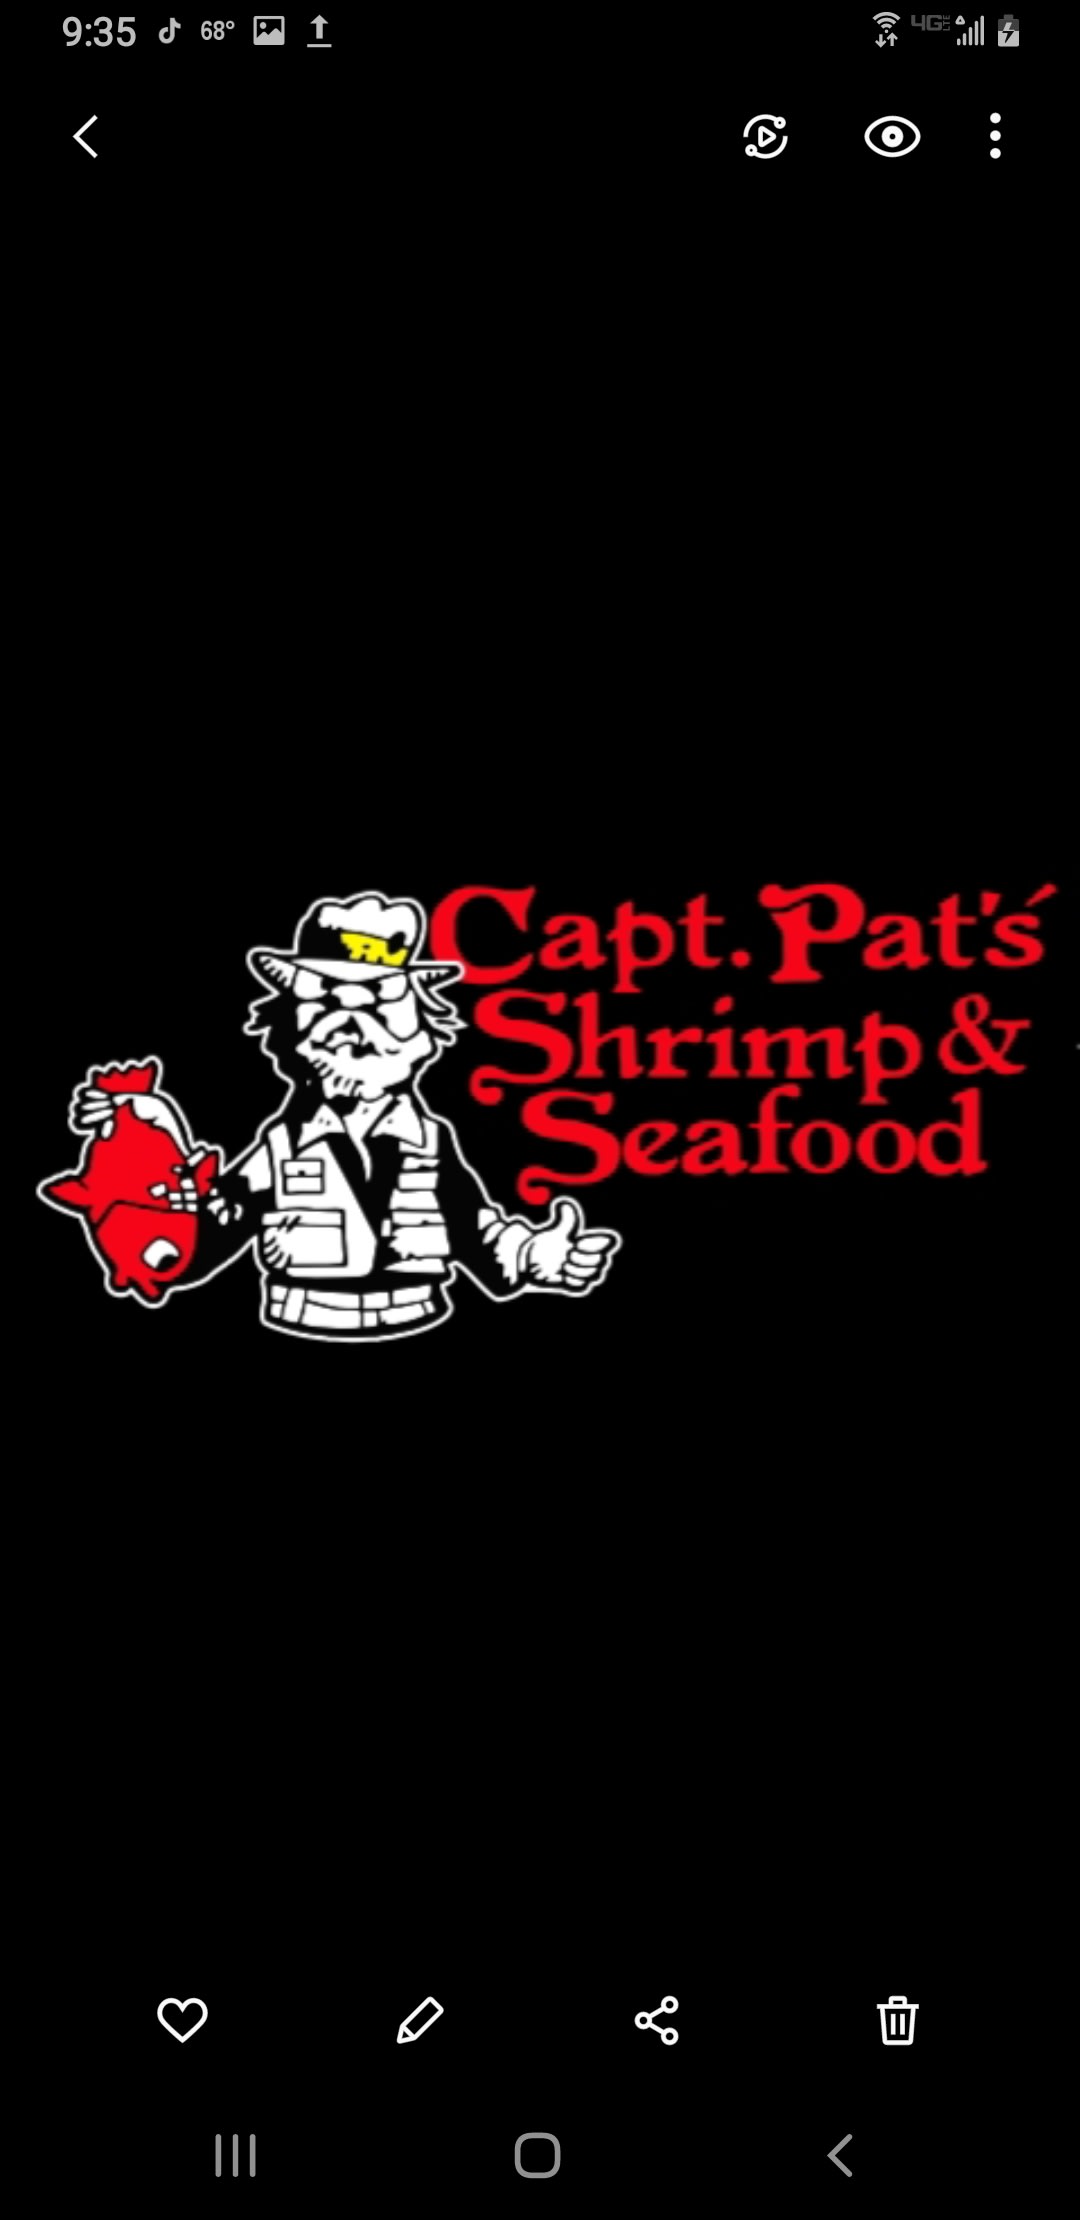 Capt Pat's Shrimp & Seafood